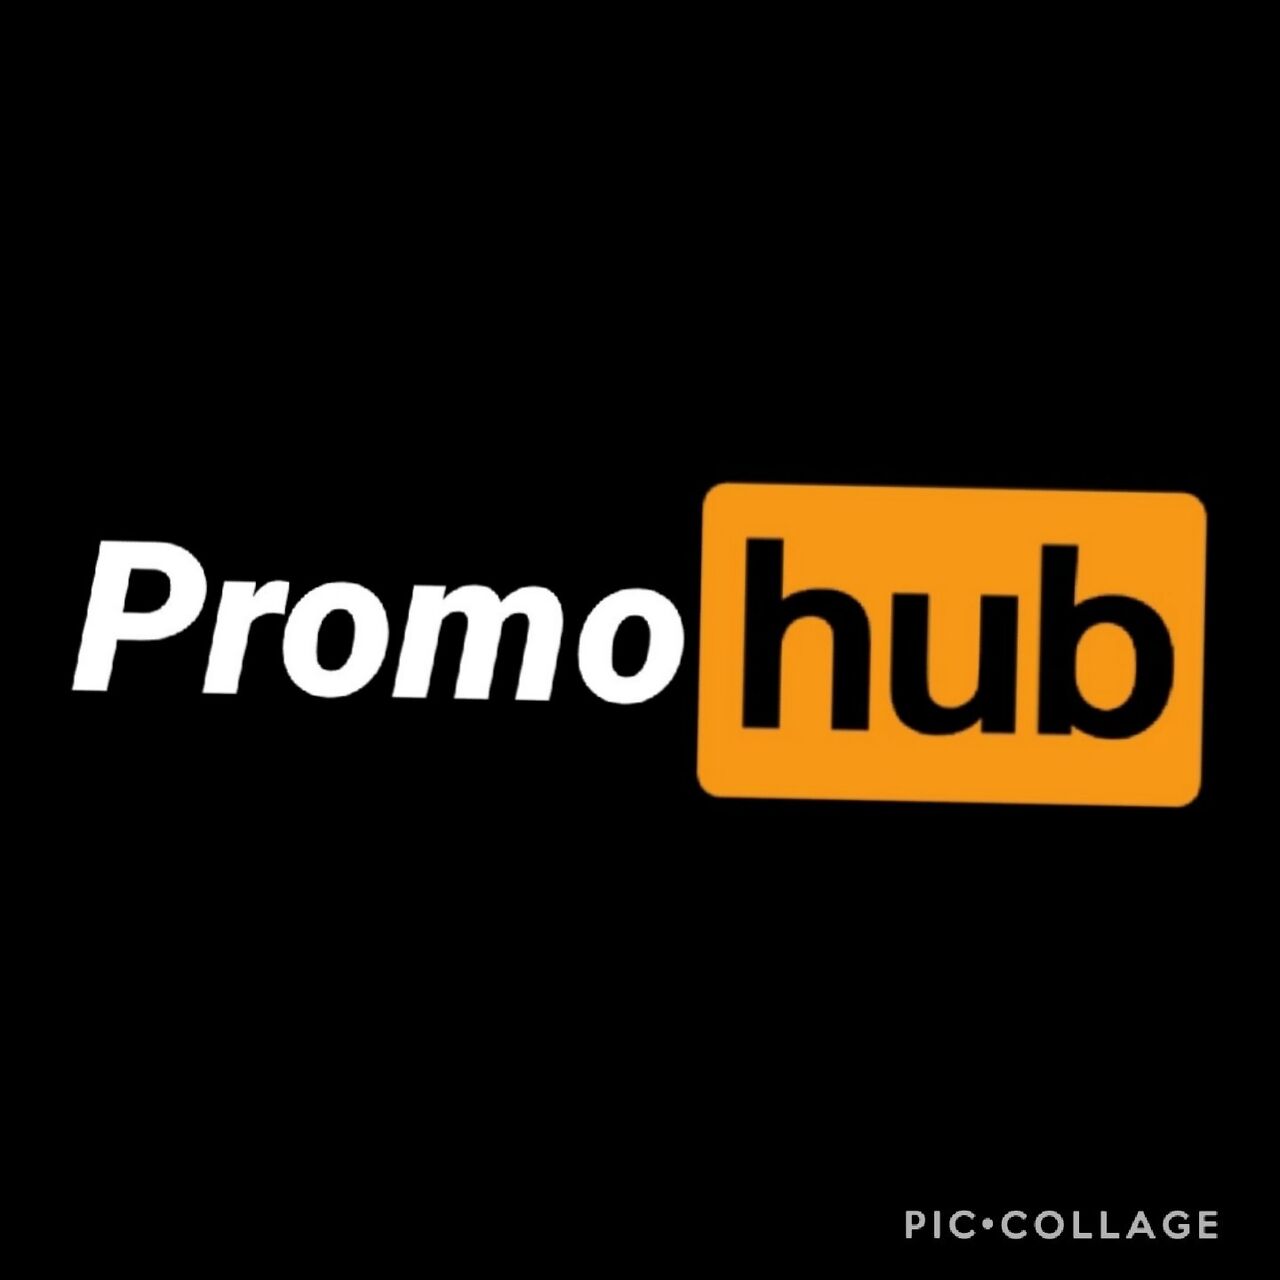 See The Promo Hub profile